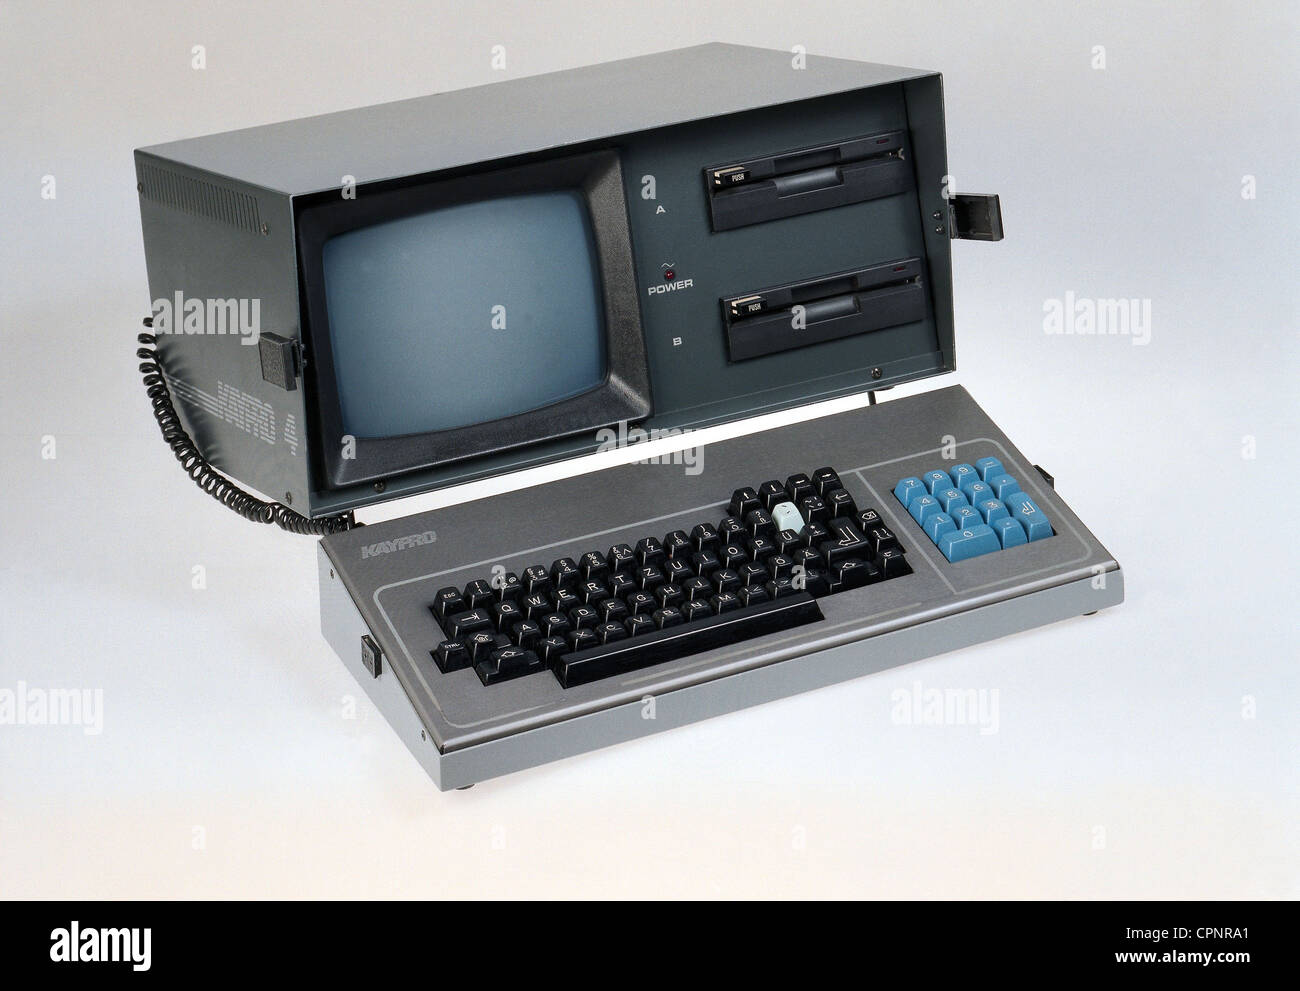 Computer / Elektronik, Computer, tragbarer Personal Computer, Kaypro 4,  einer der ersten tragbaren Computer, hergestellt von: Kaypro Corporation,  USA, 1983,tragbar,PC,Laptop,Laptop,Laptop,Laptop,Laptop,Z80 / 8 Bit  Mikroprozessor,Betriebssystem CP/M ...